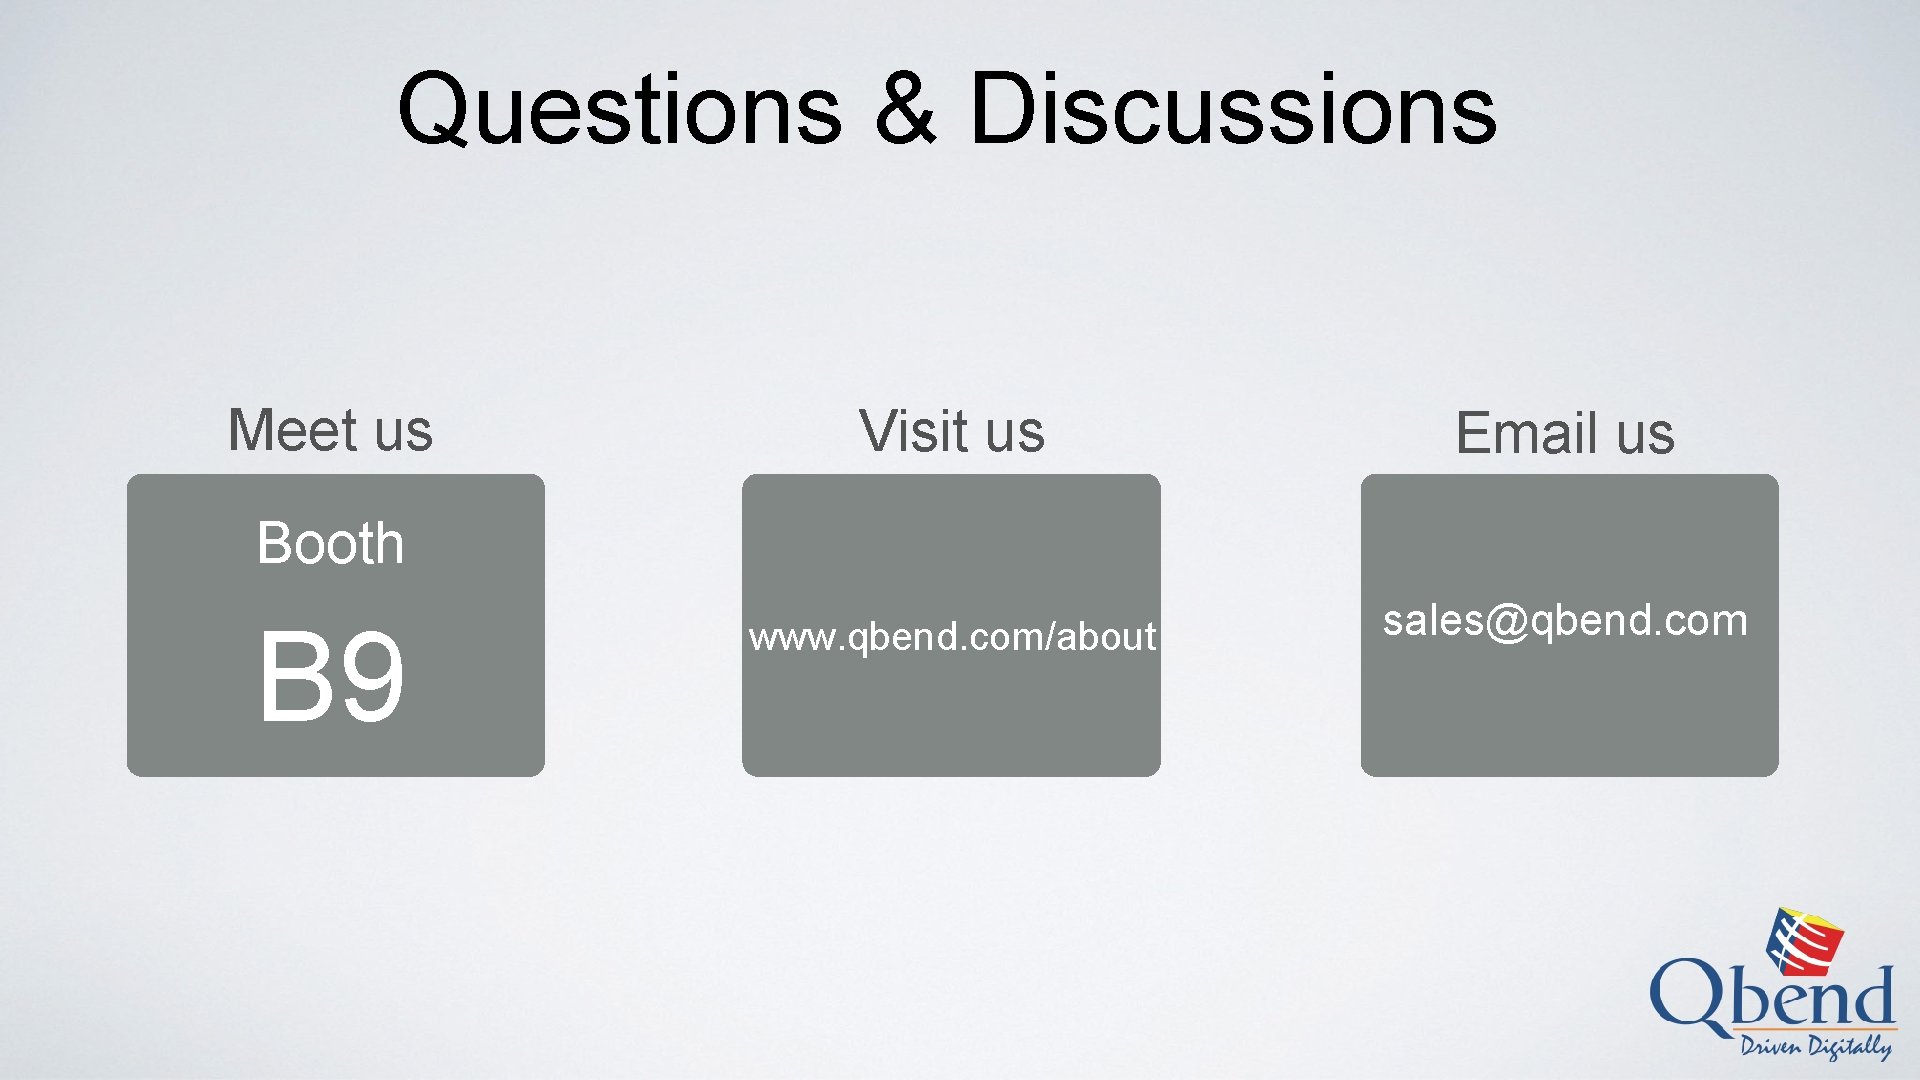 Questions & Discussions Meet us Visit us Email us www. qbend. com/about sales@qbend. com